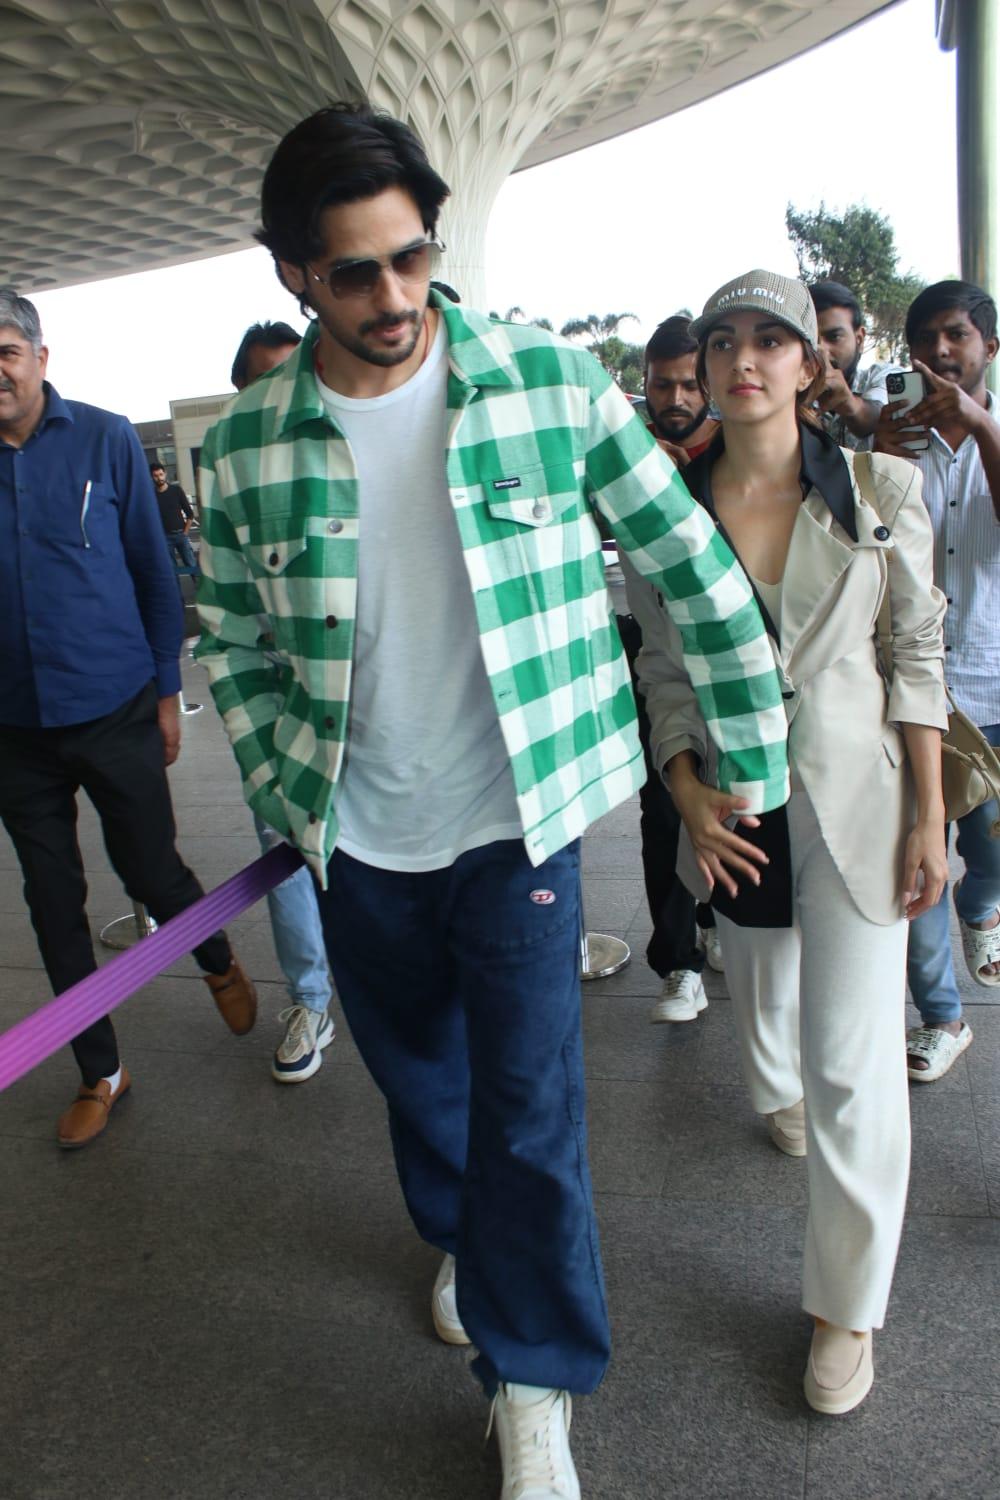 Kiara Advani and Sidharth Malhotra were spotted at the Mumbai airport this morning